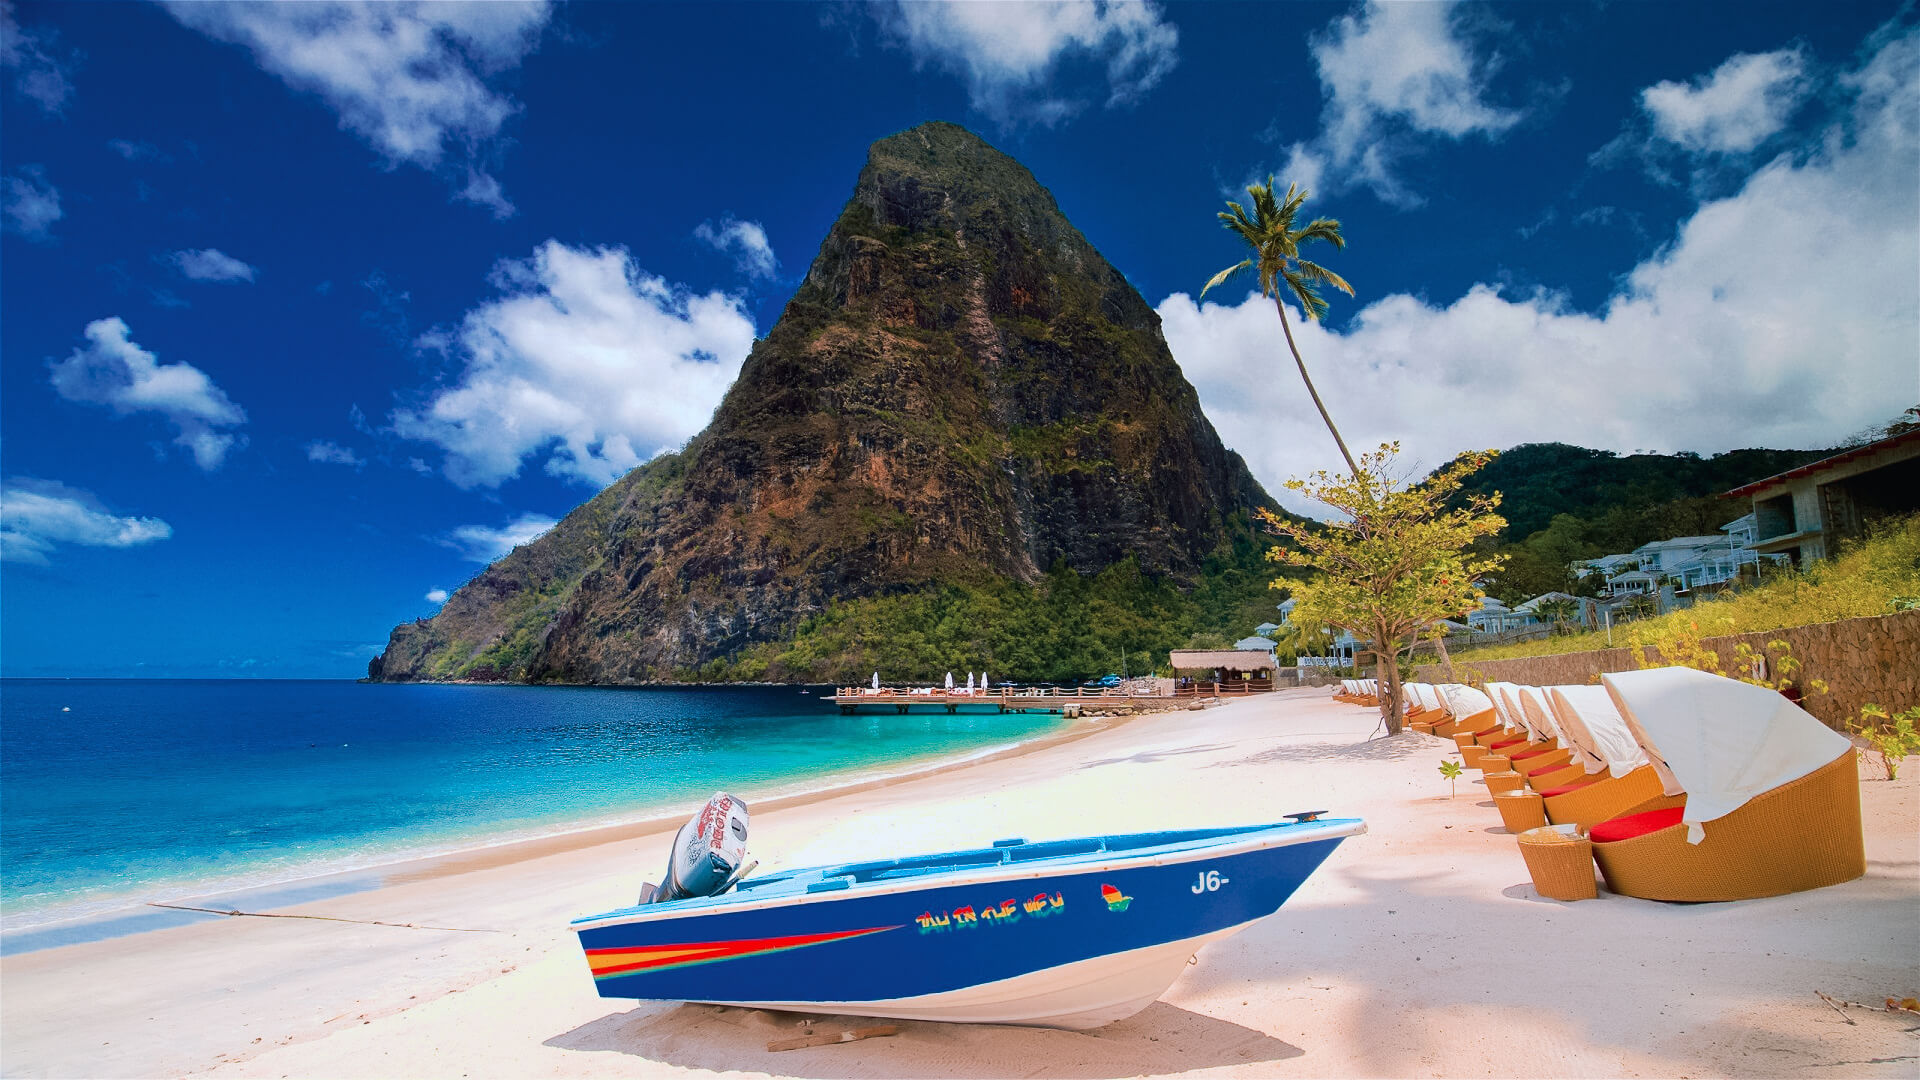 Panduan perjalanan Saint Lucia - Penolong Travel S